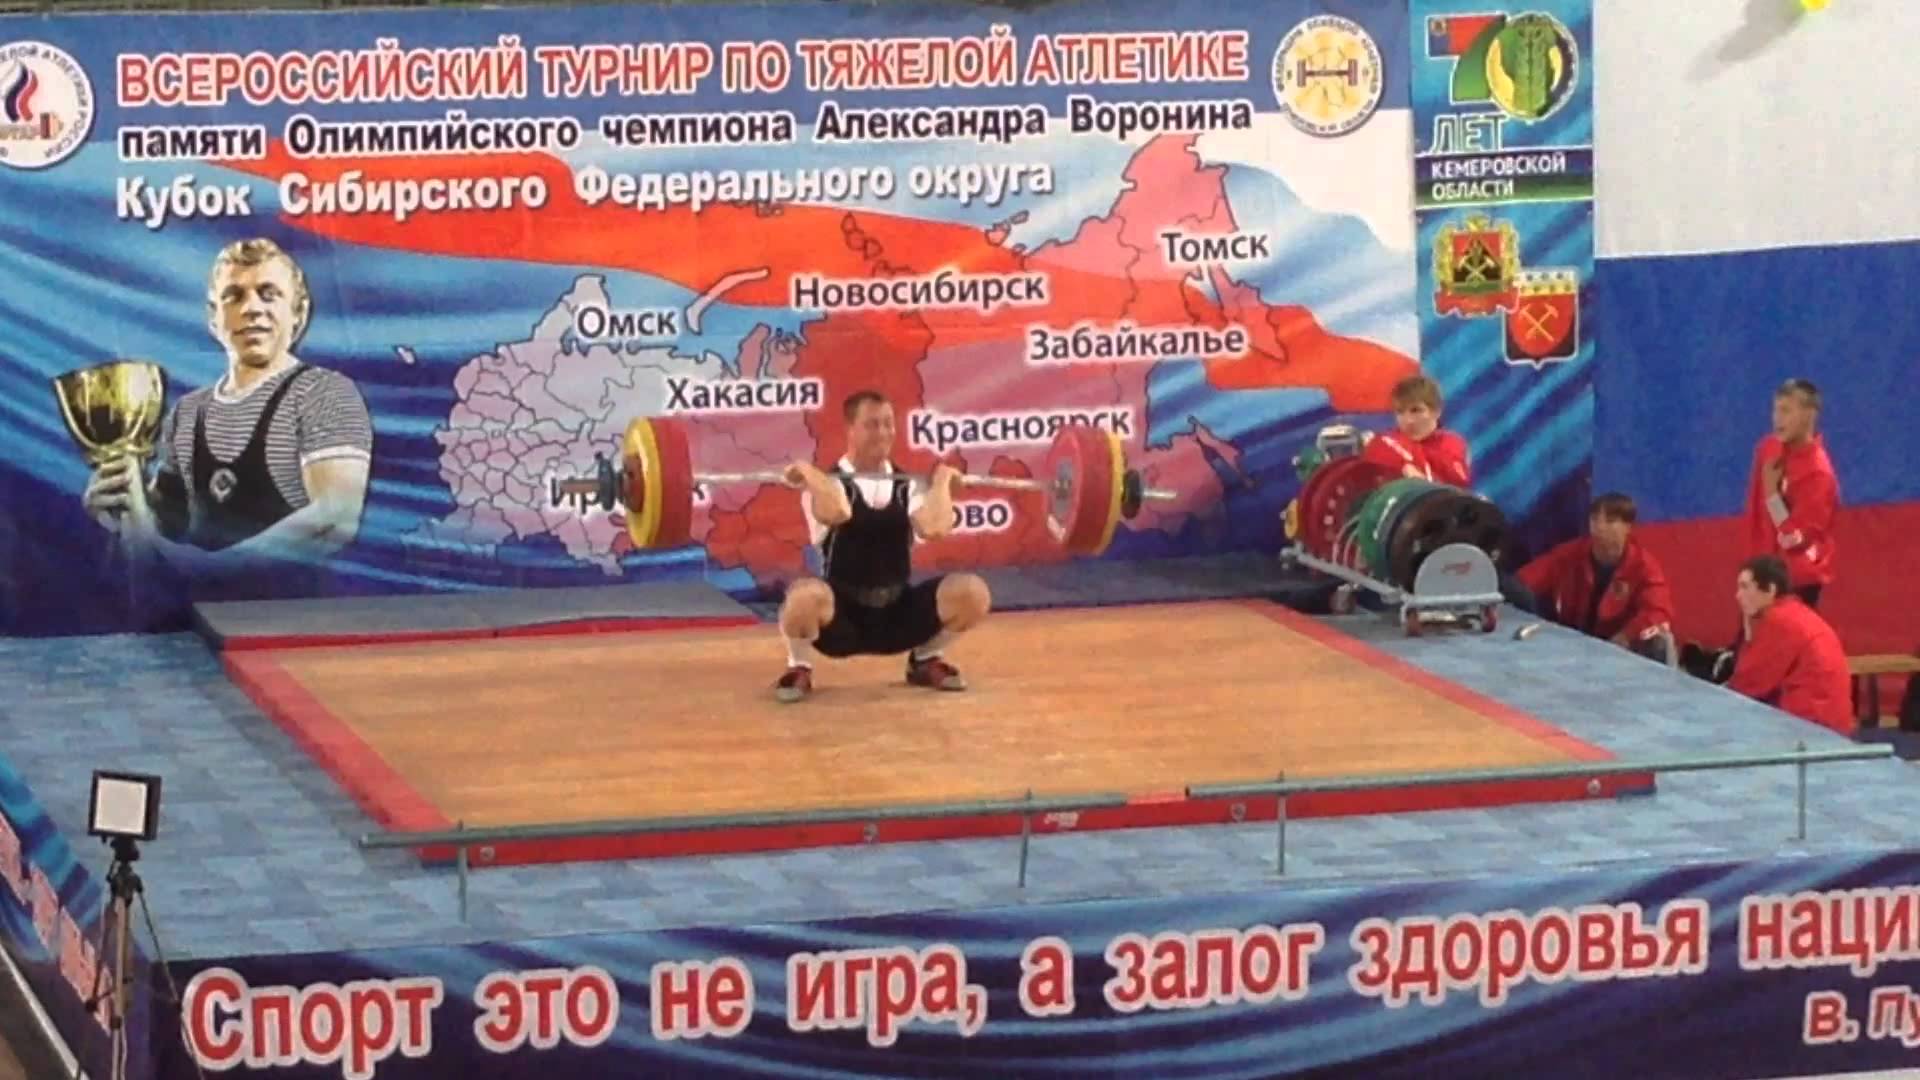 Сборная Кузбасса по тяжелой атлетике выиграла всероссийский турнир памяти Александра Воронина